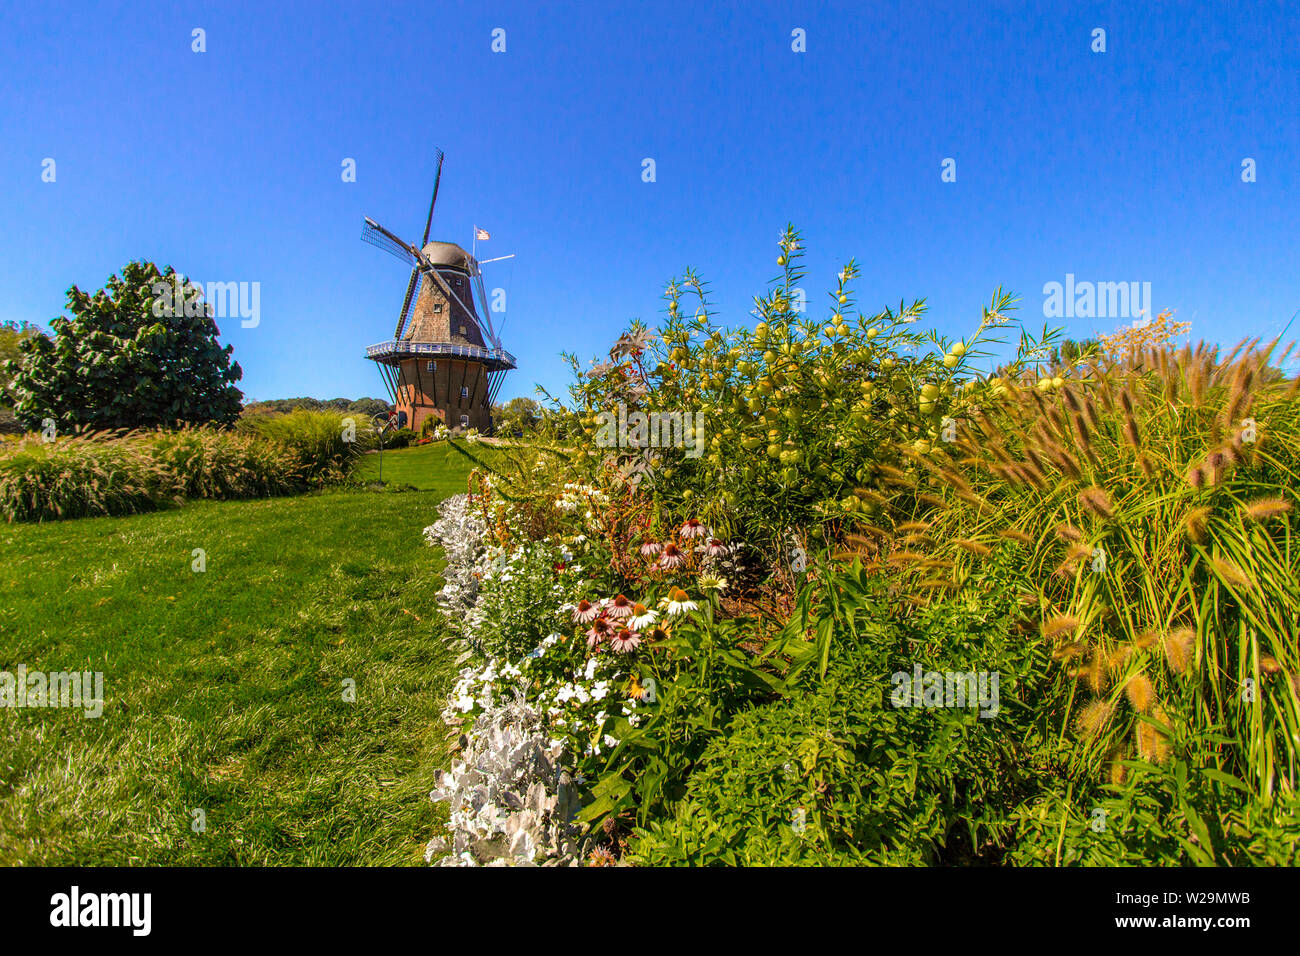 Holland Michigan Holländer-windmühle. Die älteste authentische holländische Windmühle in Amerika ist in Holland, Michigan gelegen Es ist das Herzstück Tulip Ti Stockfoto